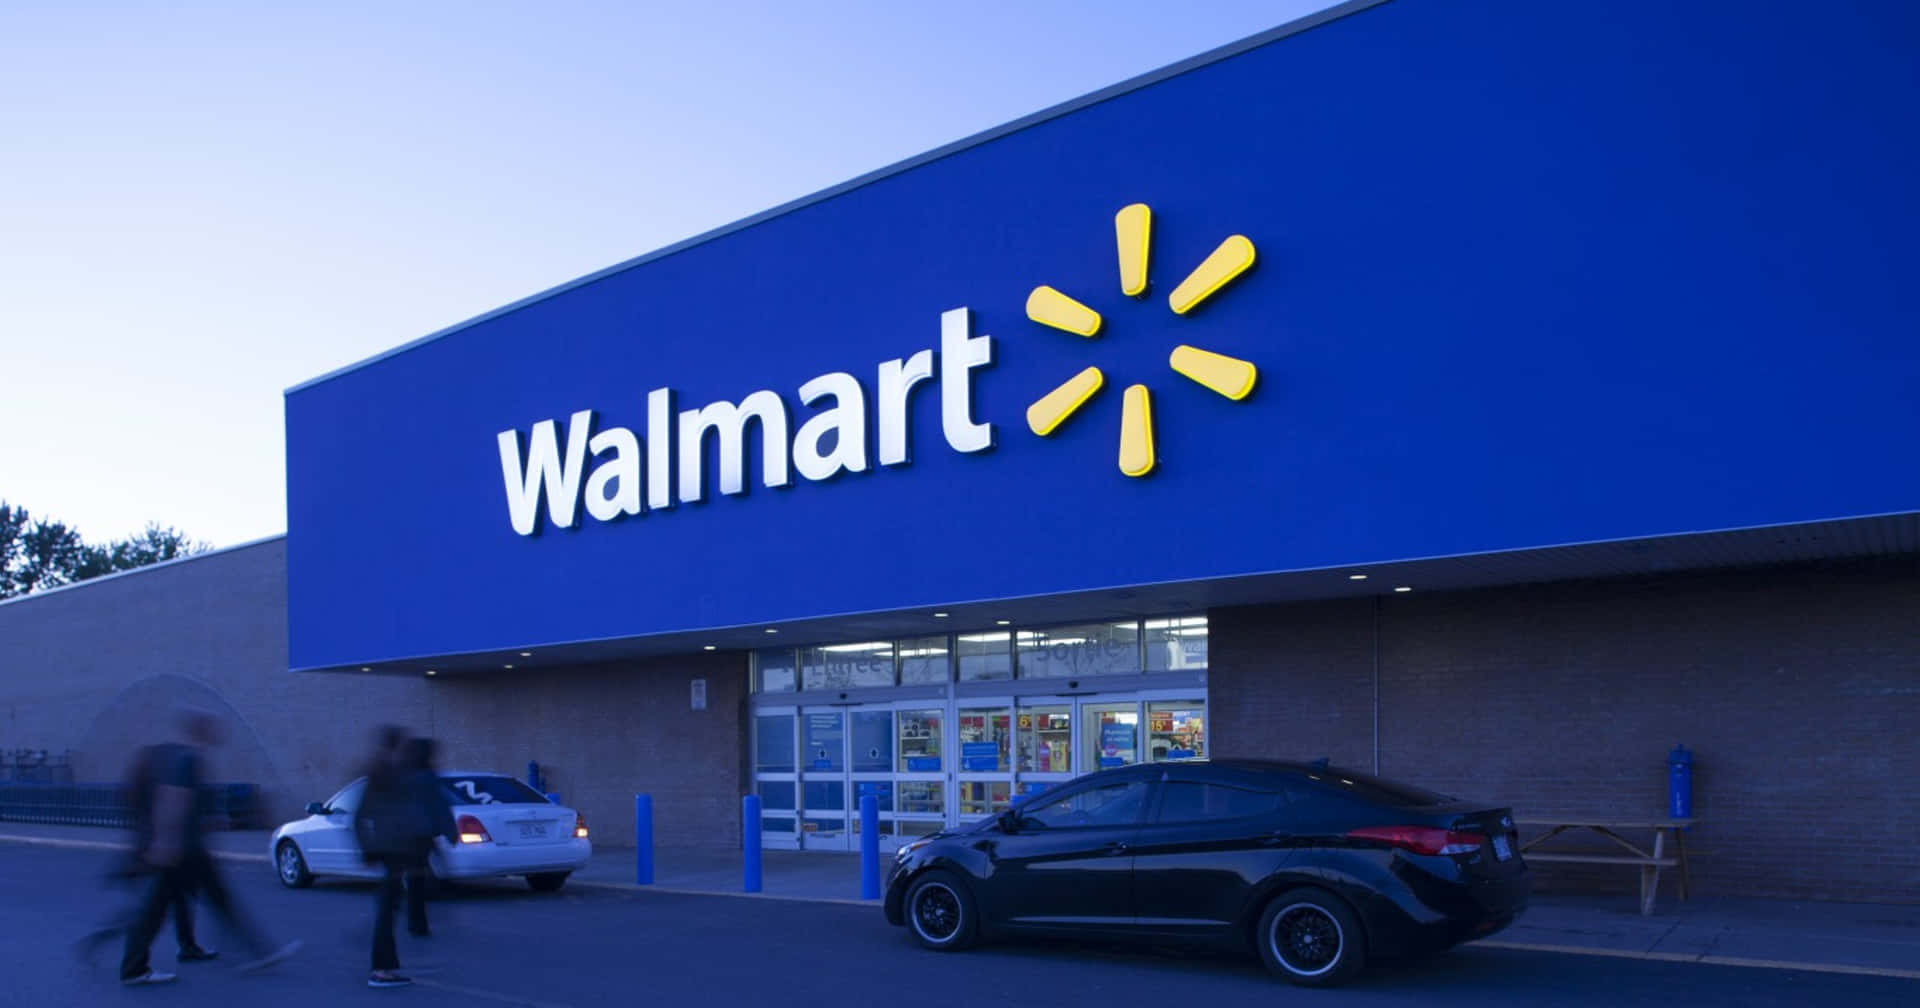 Walmartes Una Tienda Grande Con Un Letrero Azul.